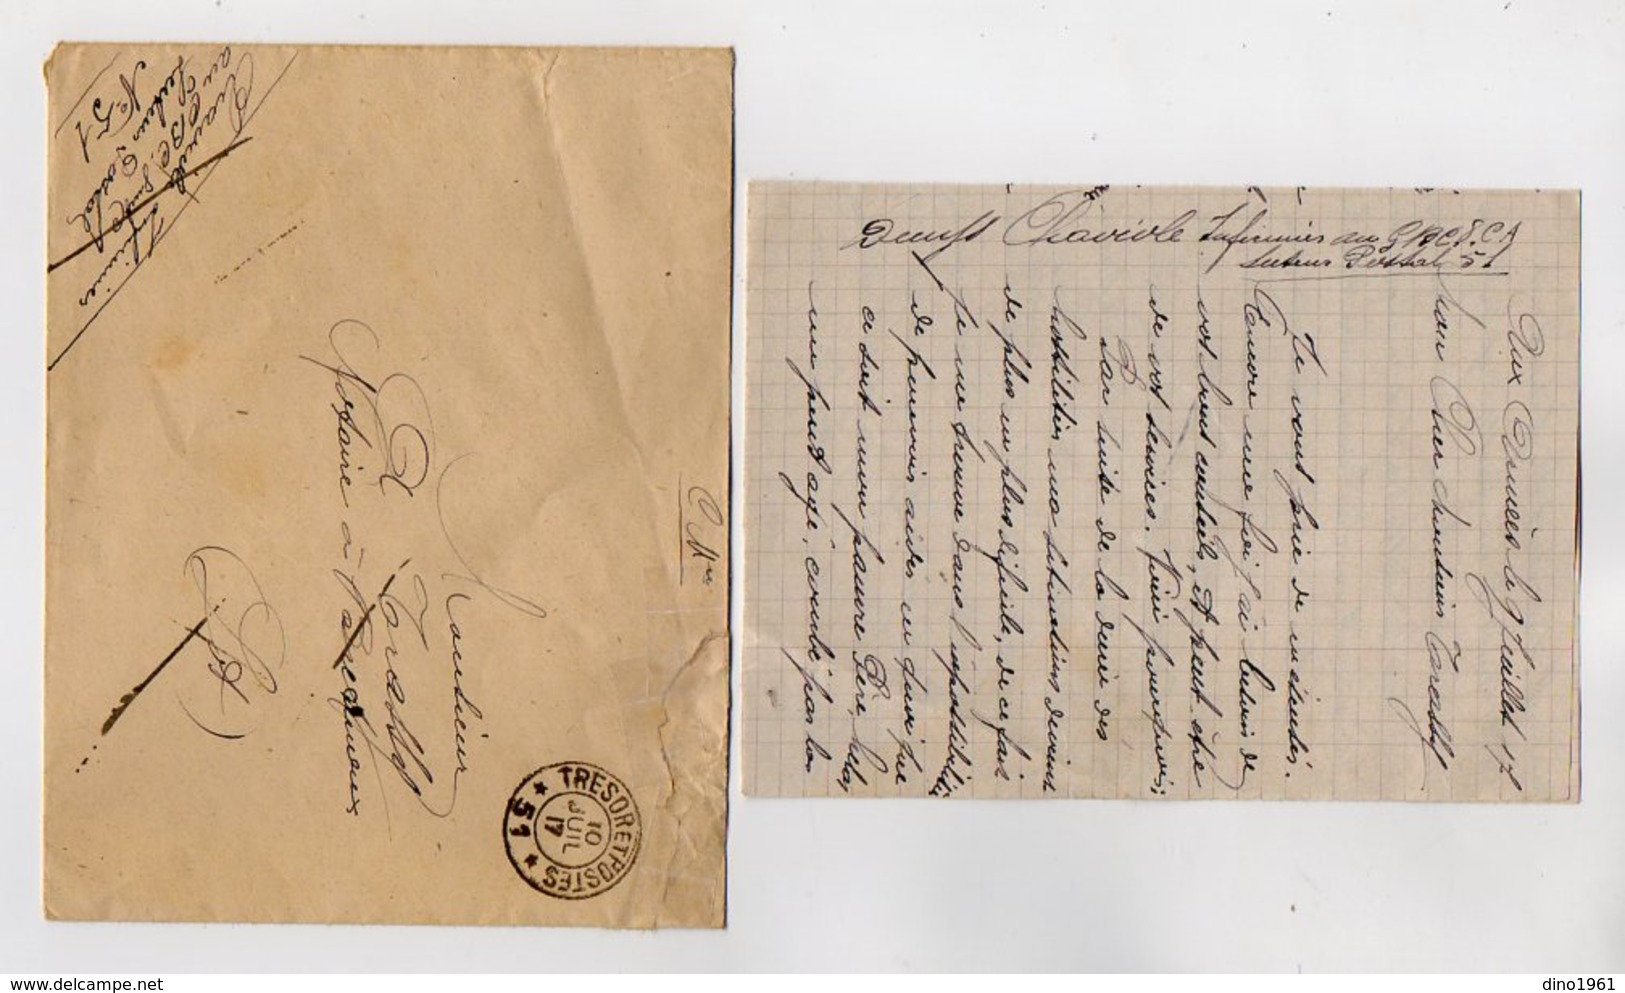 VP16.892 - MILITARIA - 1917 - Lettre Du Soldat CHAVIOLE Infirmier Au G.B.C .....Secteur Postal 51 - Documenten